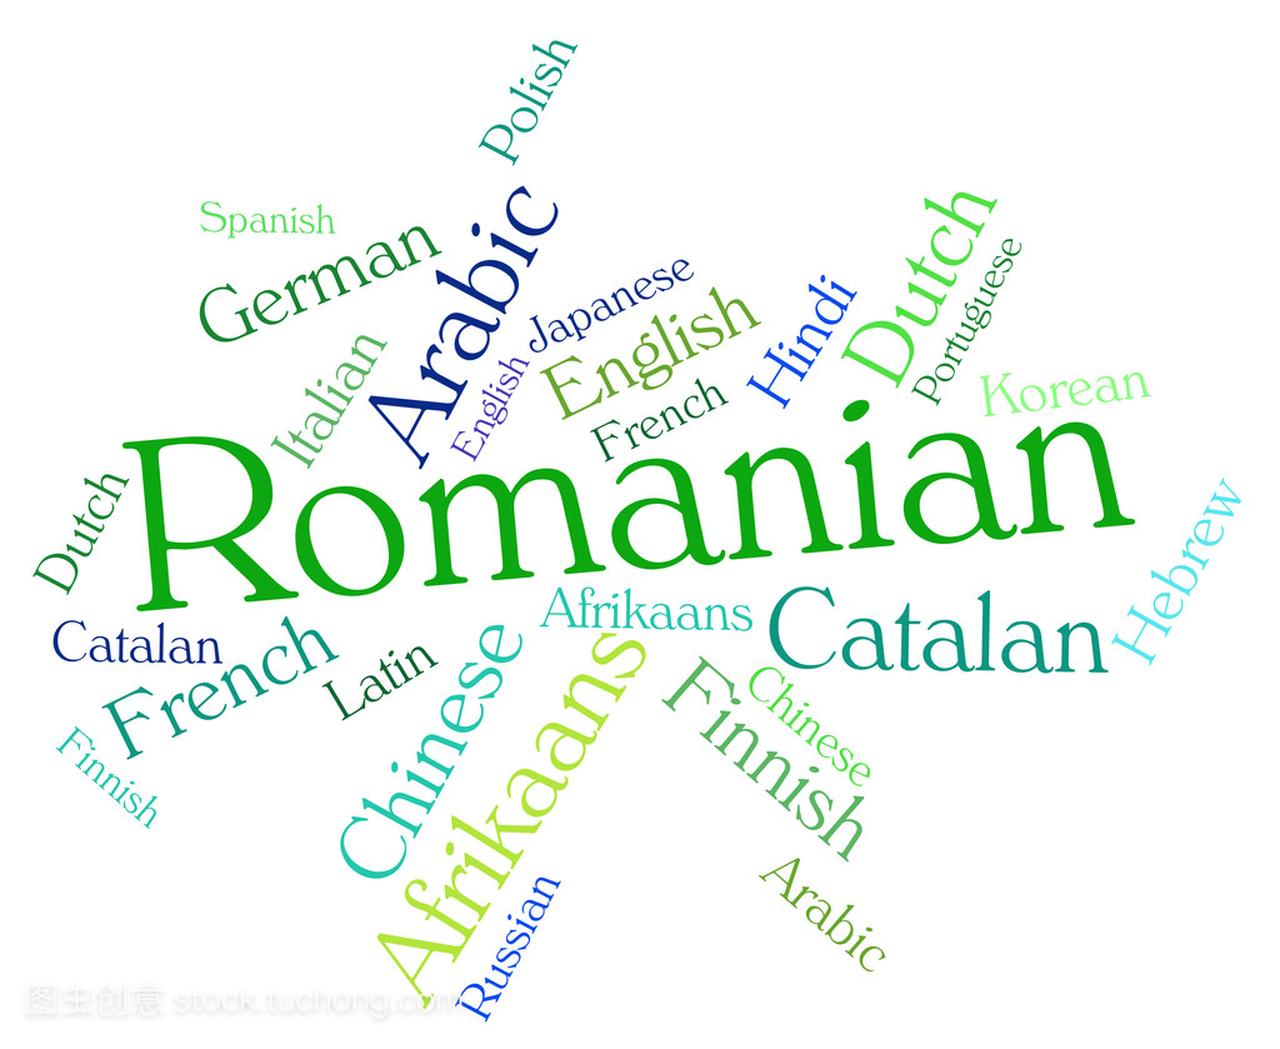 罗马尼亚语指示文本 Wordcloud 和通信